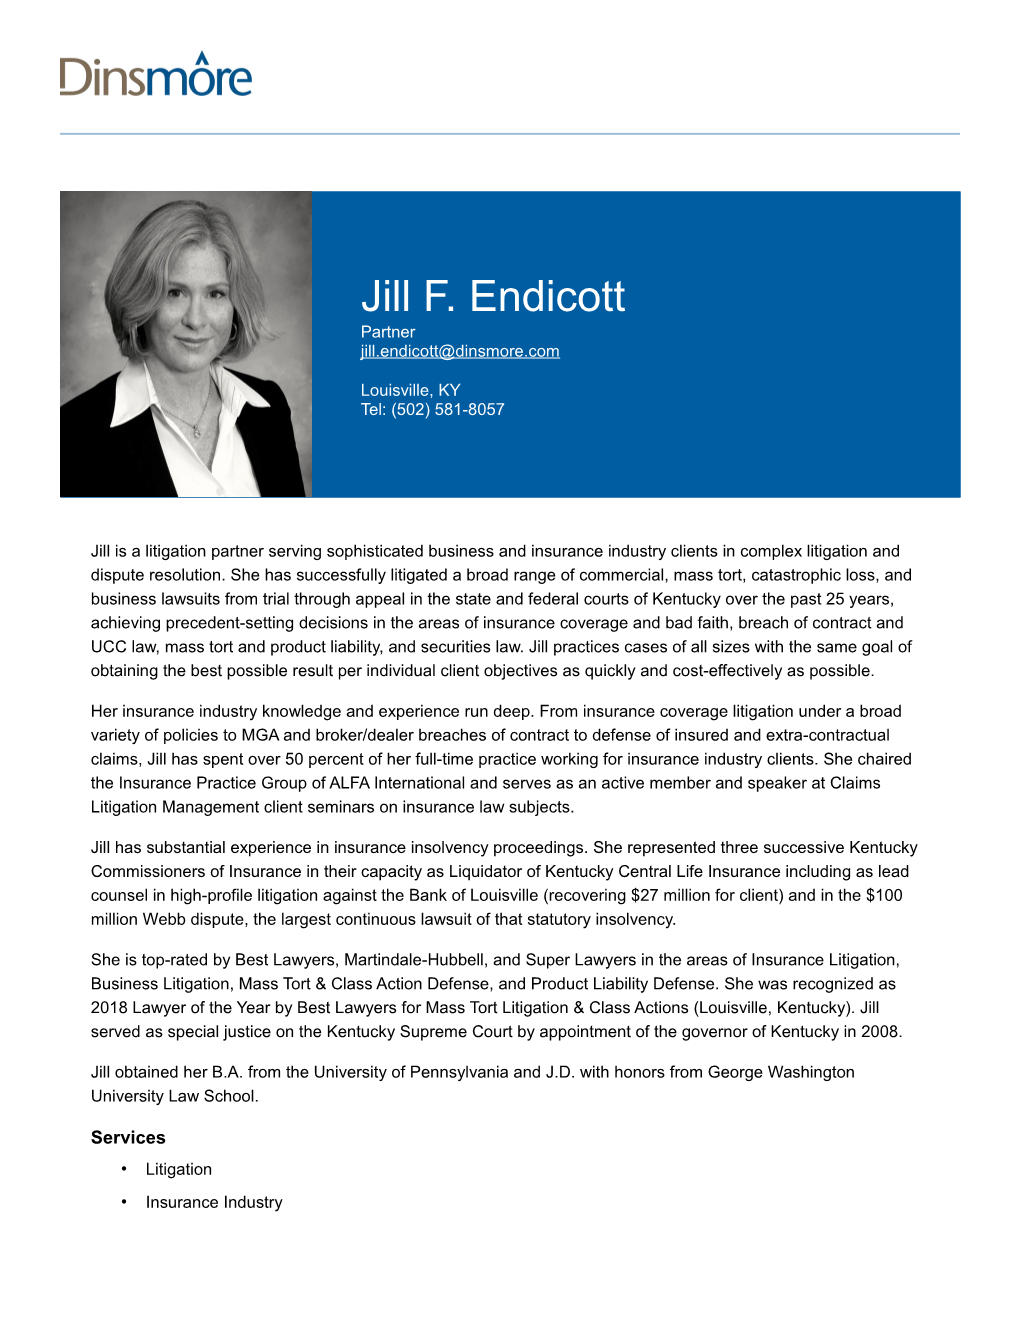 Jill F. Endicott Partner Jill.Endicott@Dinsmore.Com